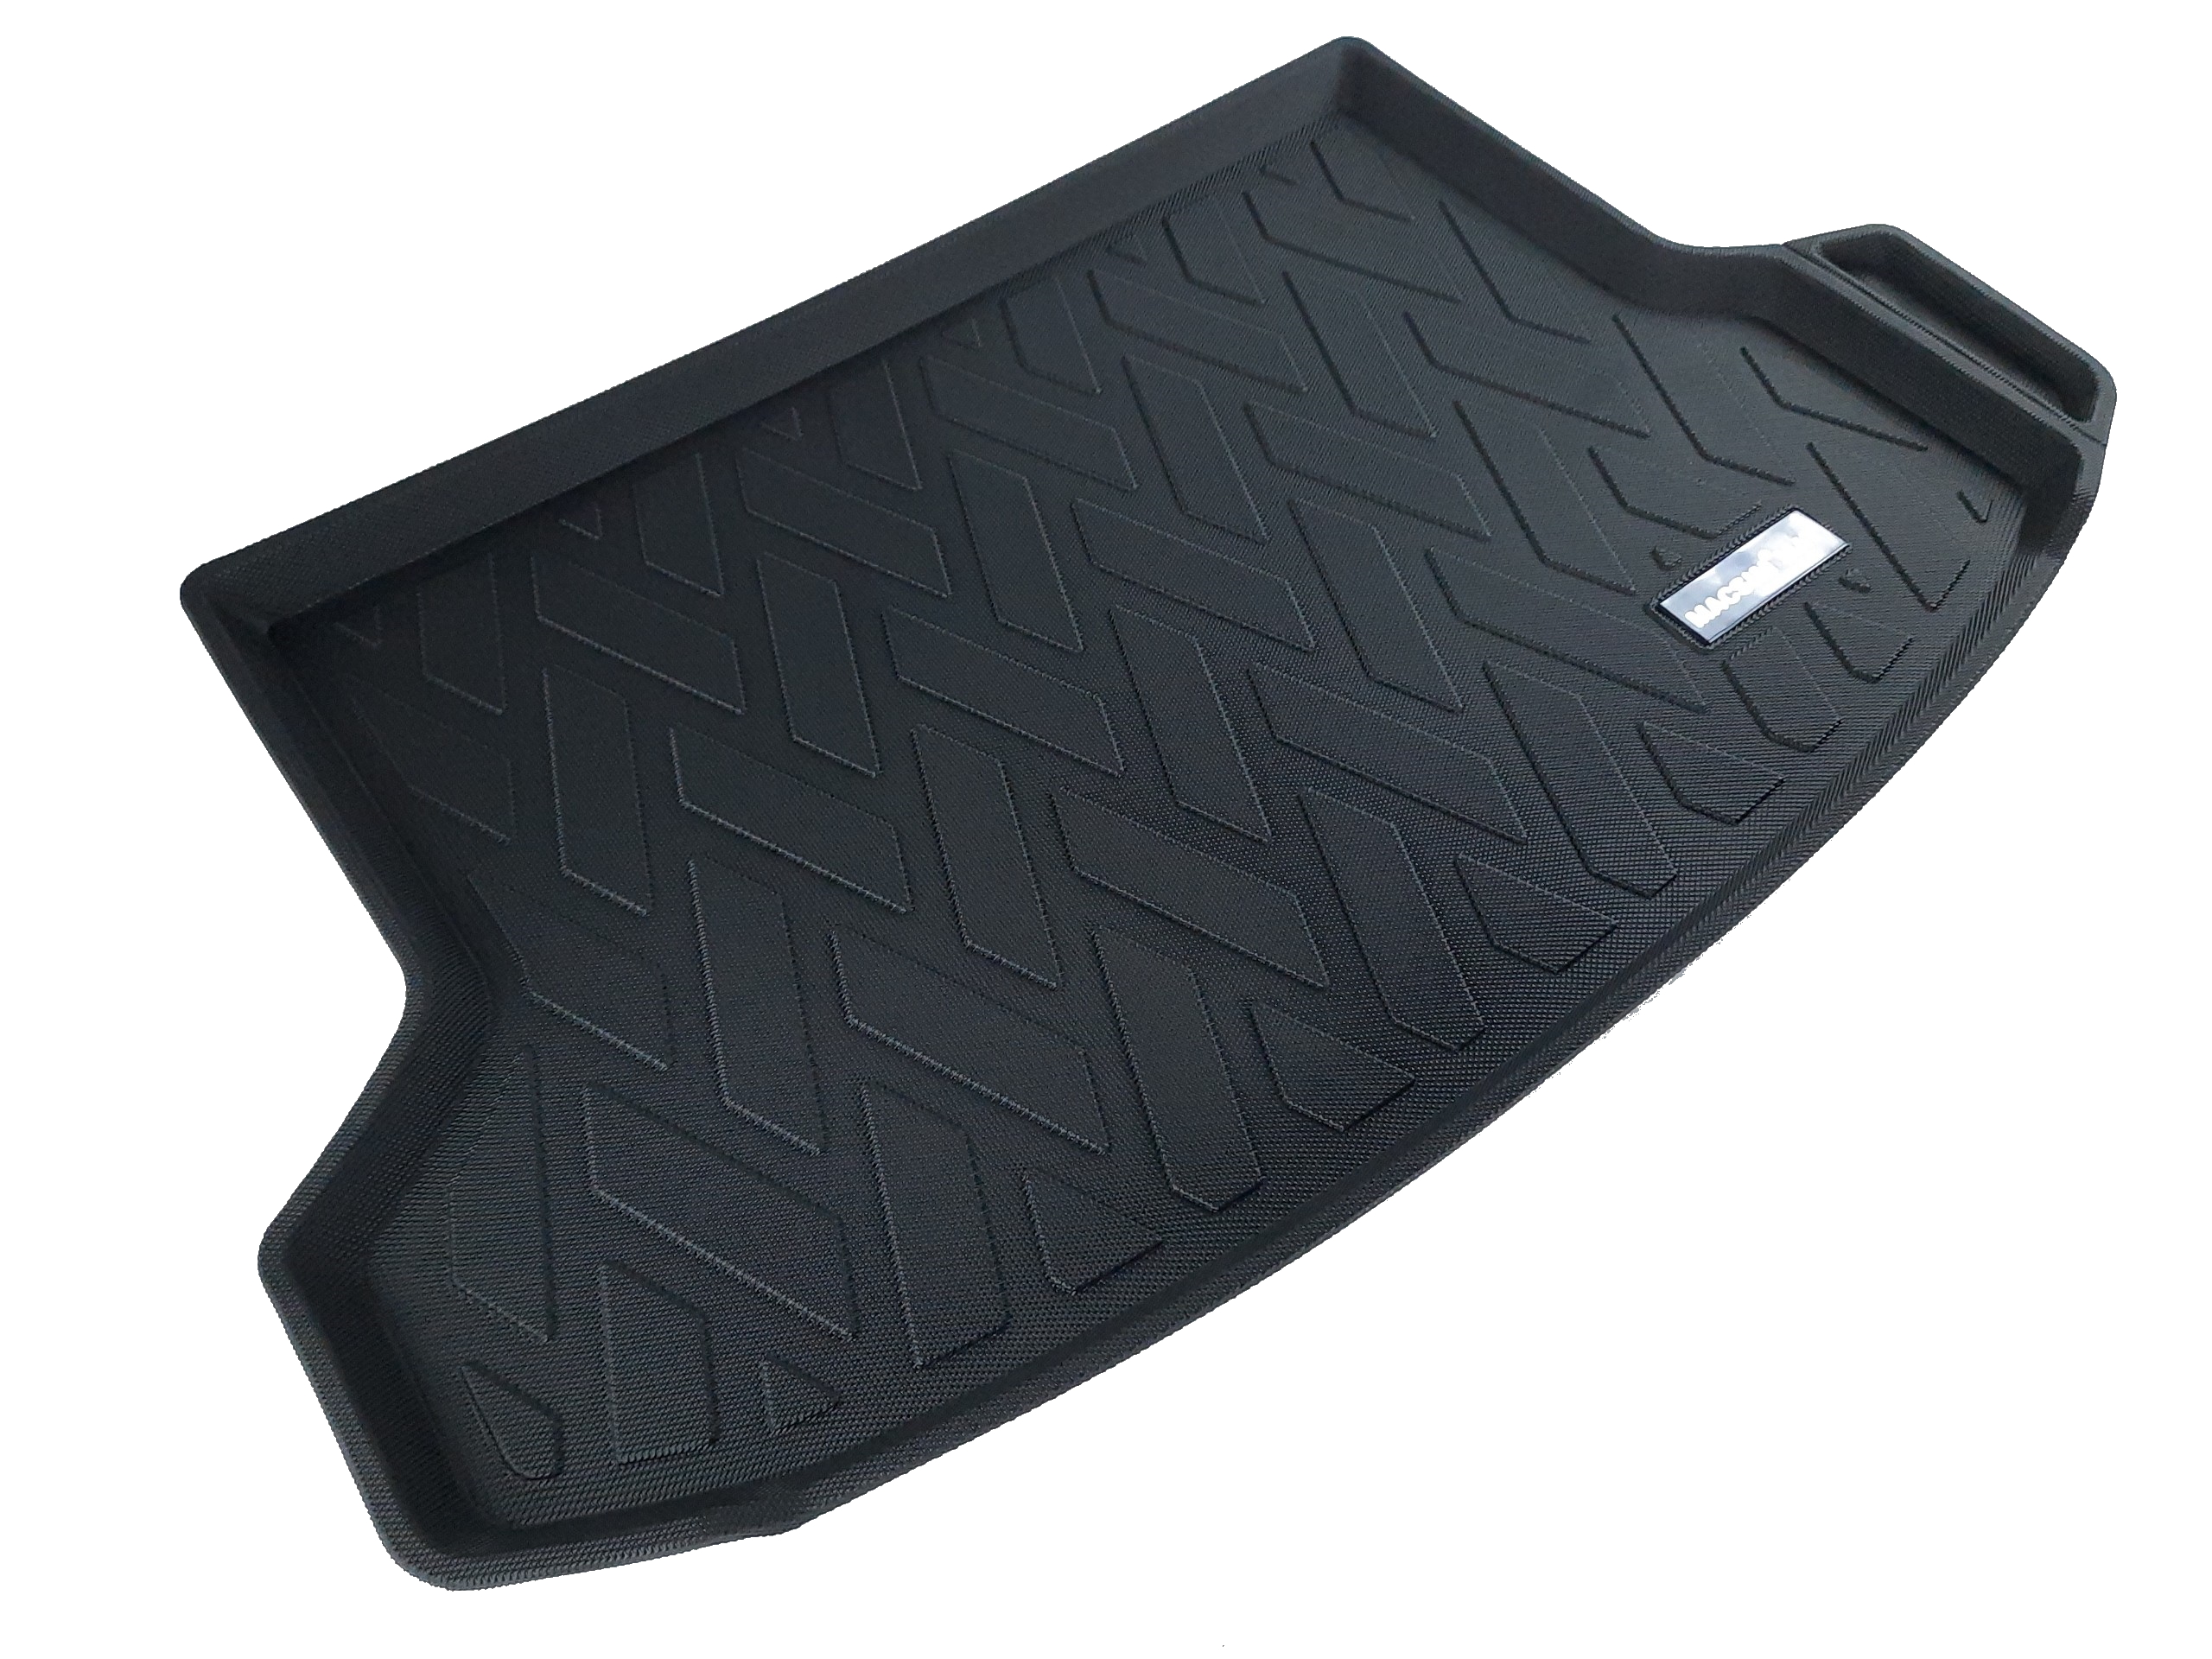 Thảm lót cốp xe ô tô dành cho Kia Seltos nhãn hiệu Macsim chất liệu TPV cao cấp màu đen